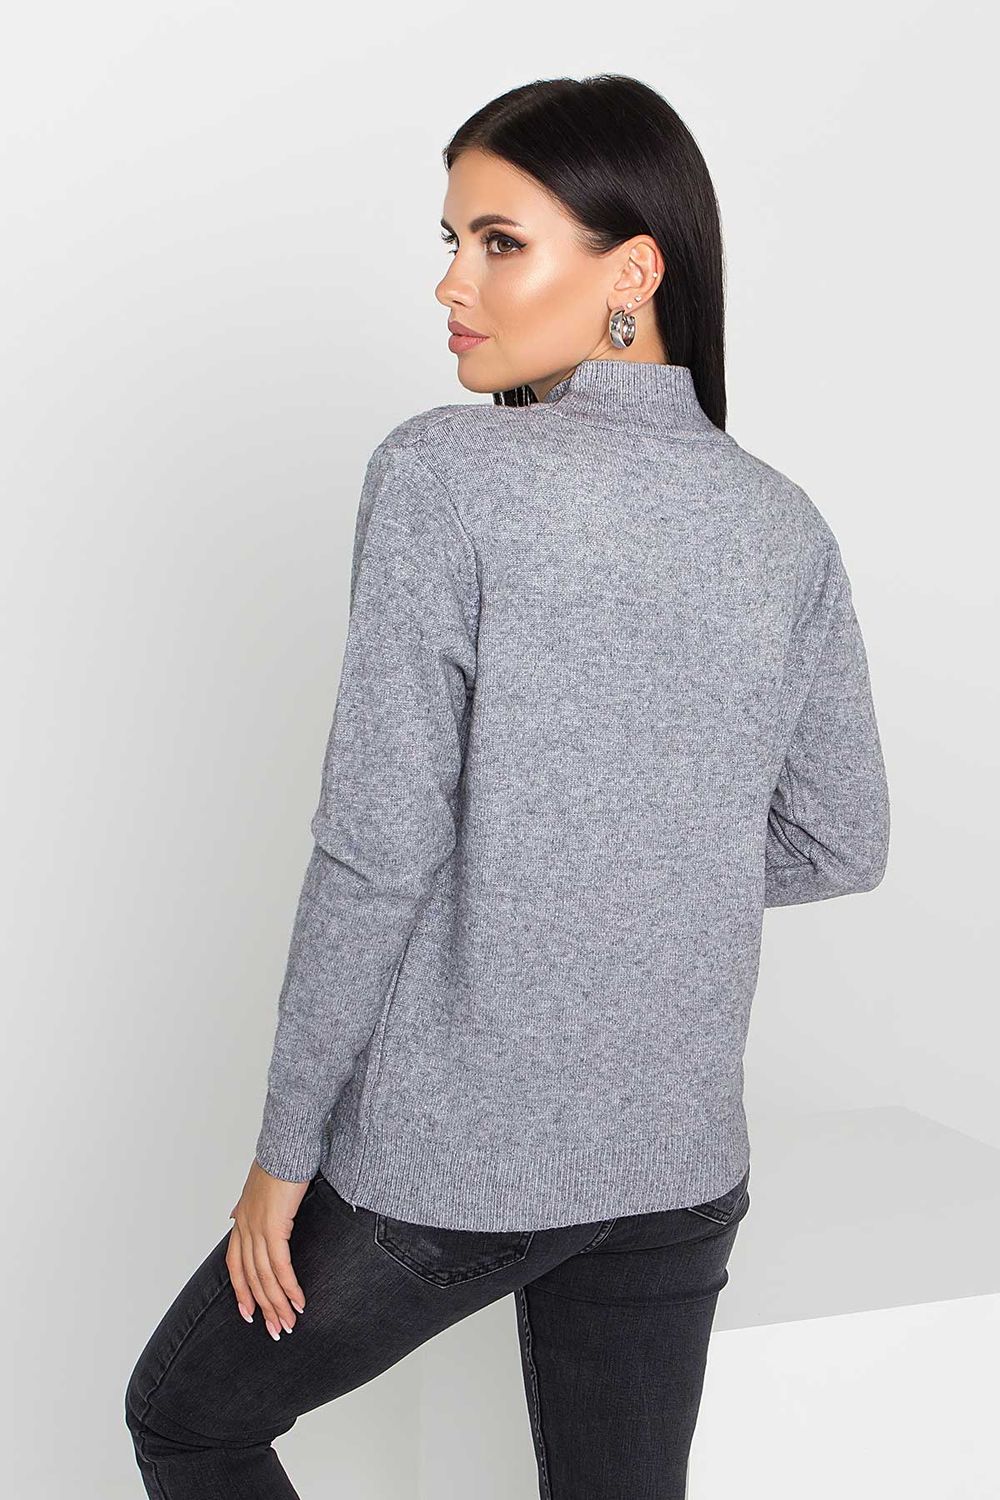 Женский вязаный свитер с узором косы серого цвета - фото